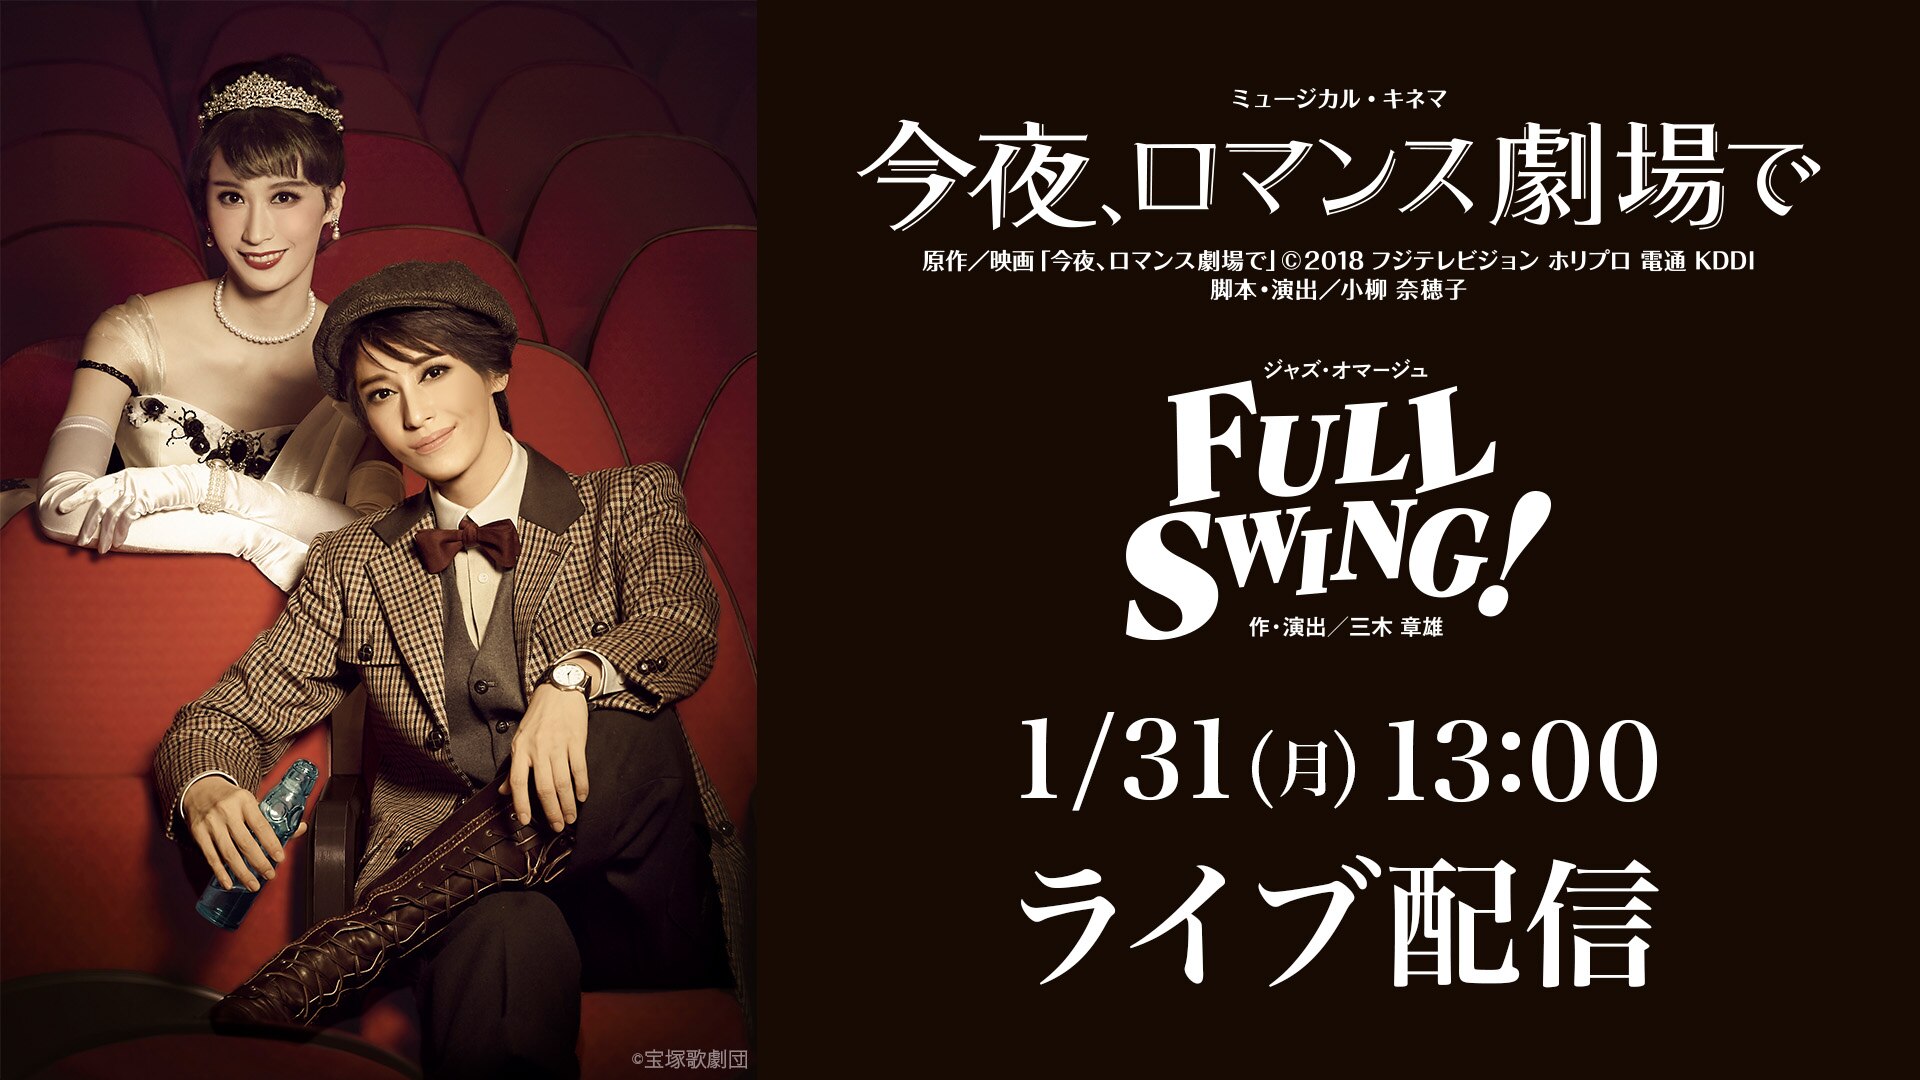 『今夜、ロマンス劇場で』『FULL SWING!』